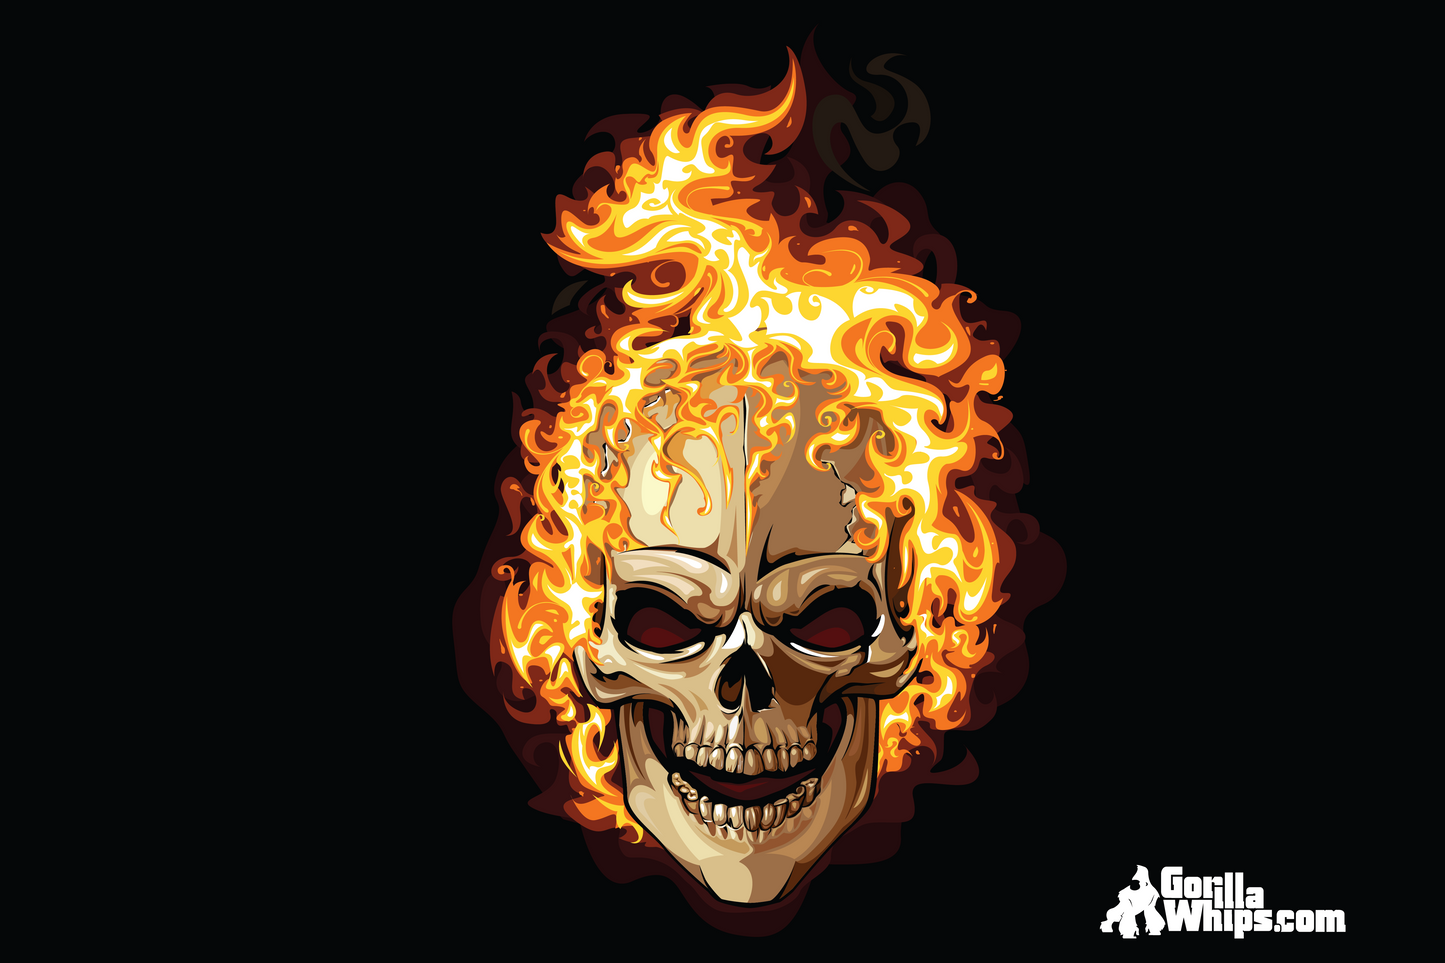 Flames Skull 2' x 3' Grommet Flag 